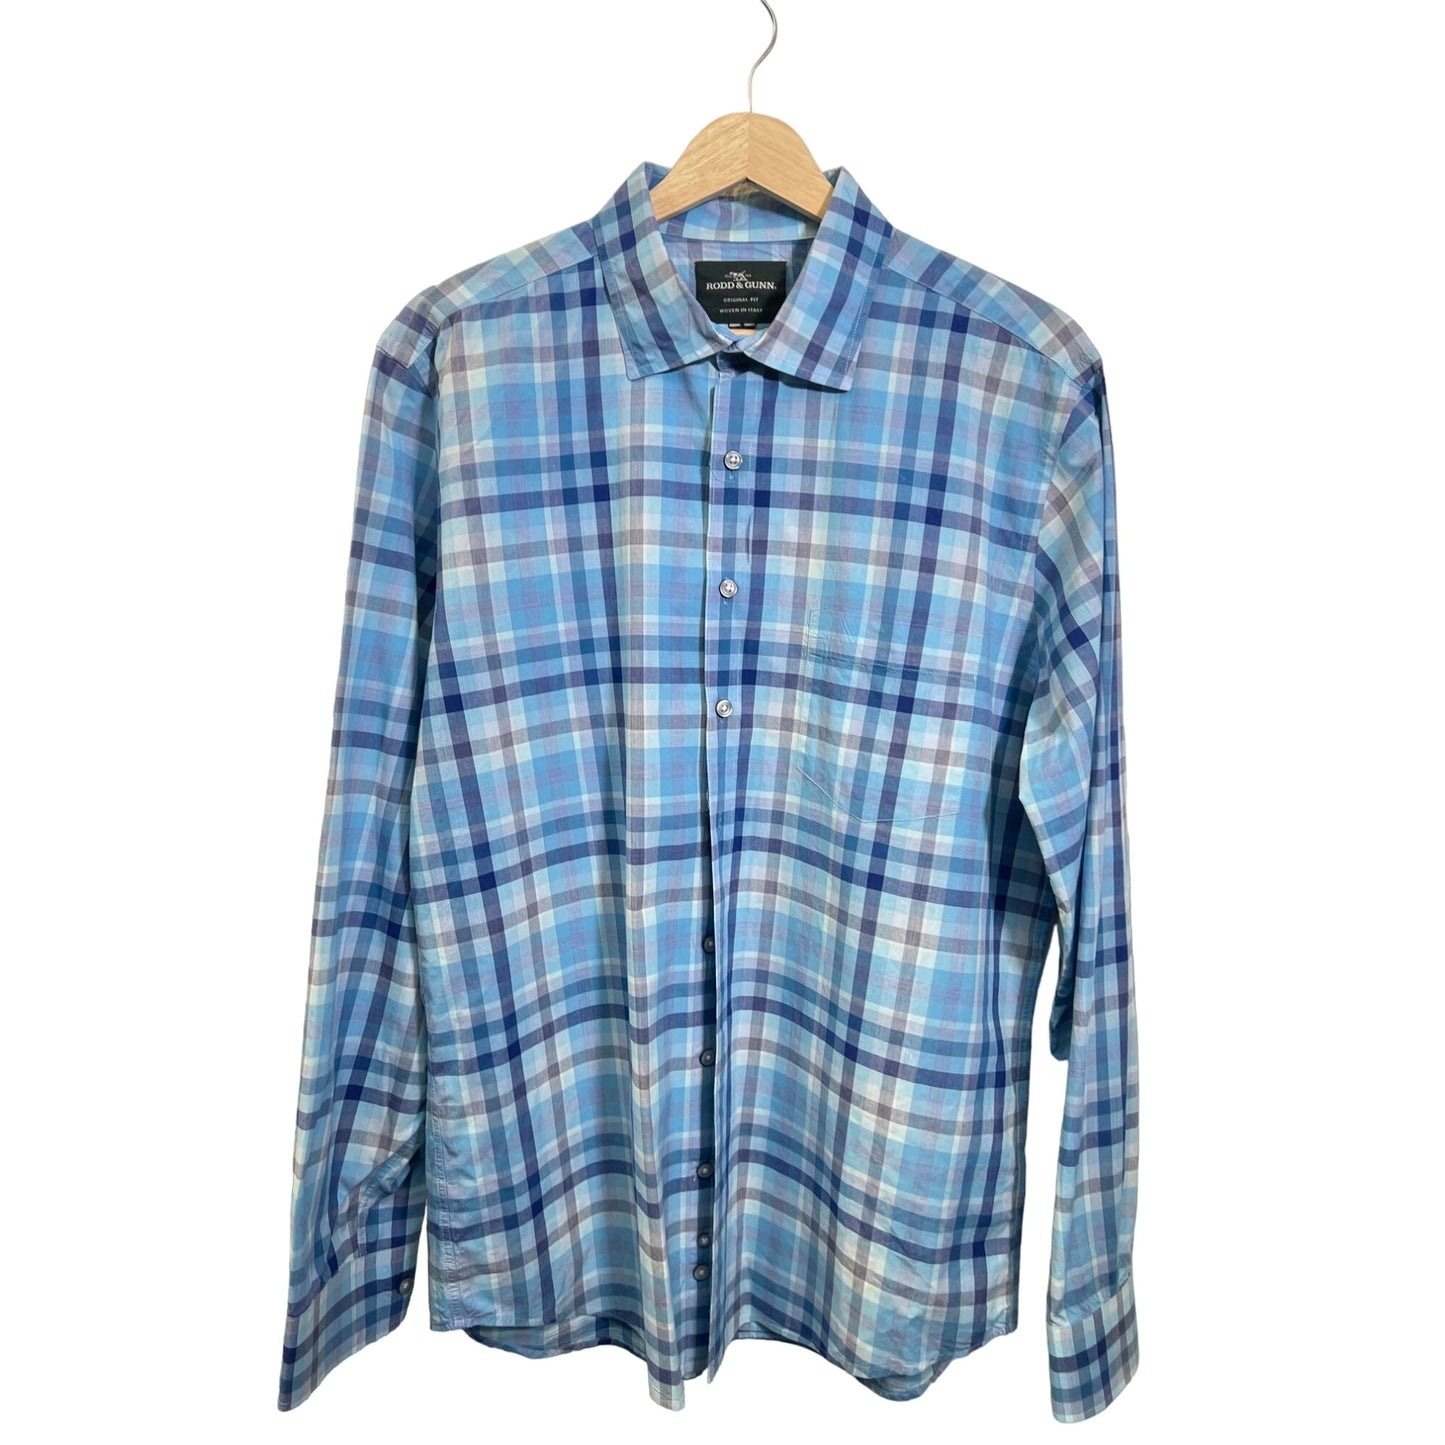 Rodd & Gunn Original FIt Blue Plaid Cotton Button Down Shirt